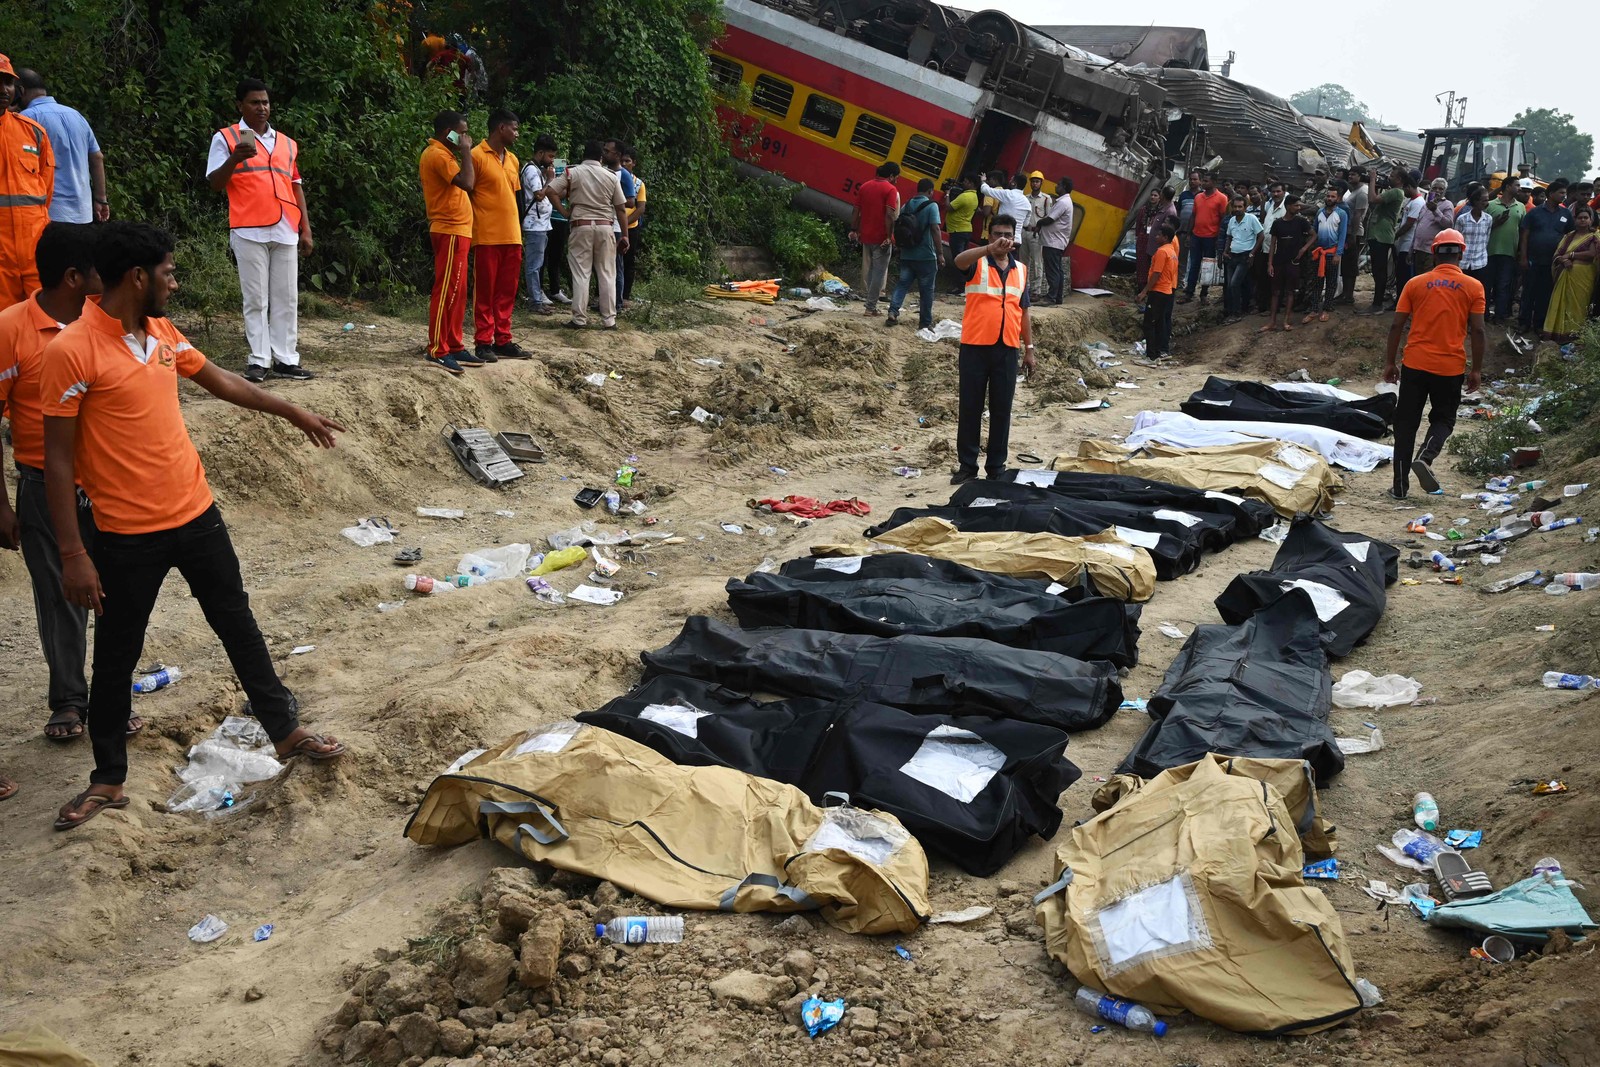 Equipes de resgate e médicos ficam em frente aos corpos das vítimas após uma colisão de trens perto de Balasore, a cerca de 200 km da capital do estado, Bhubaneswar, — Foto: DIBYANGSHU SARKAR / AFP)